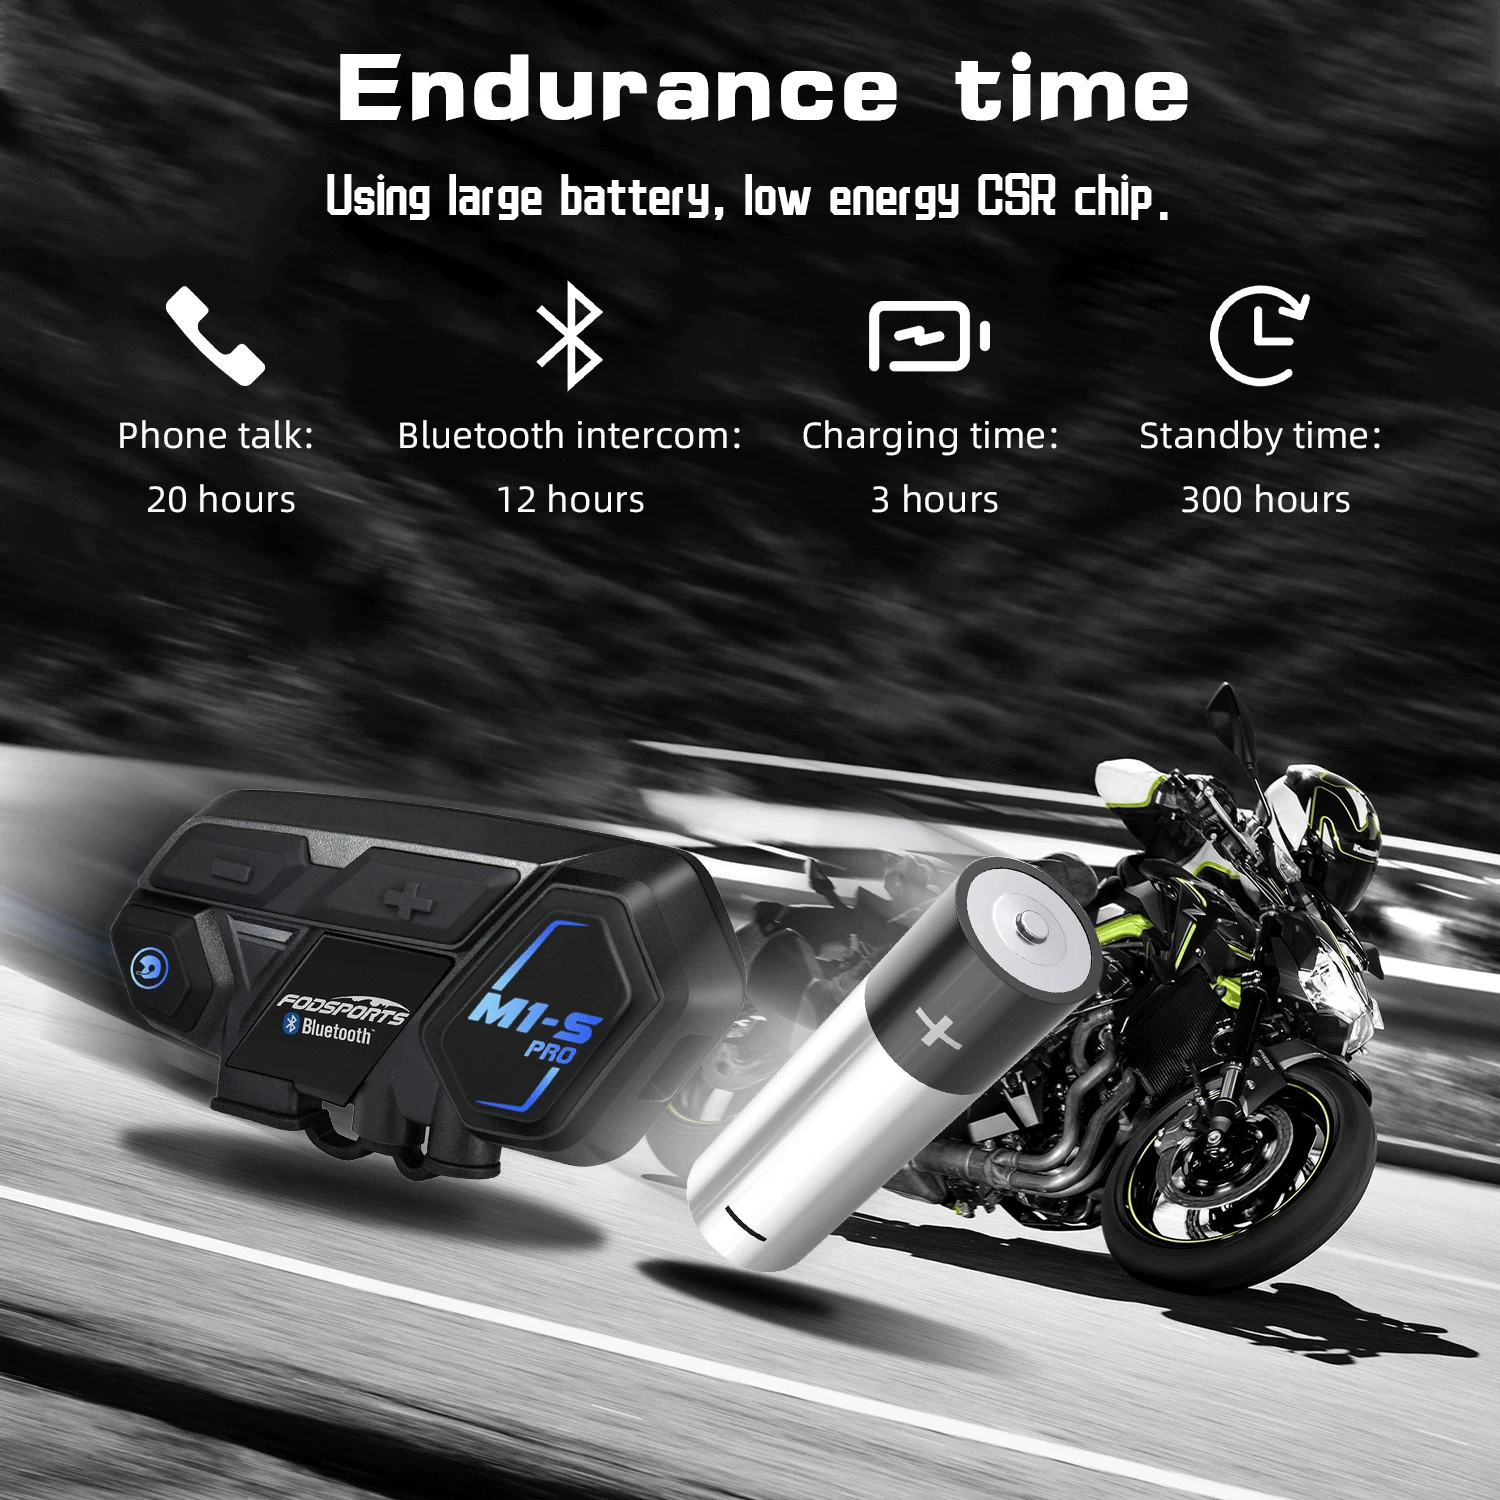 Fodsports M1-S Pro intercomunicador moto casco auricolare Bluetooth interfono moto per 8 piloti interfoni impermeabili